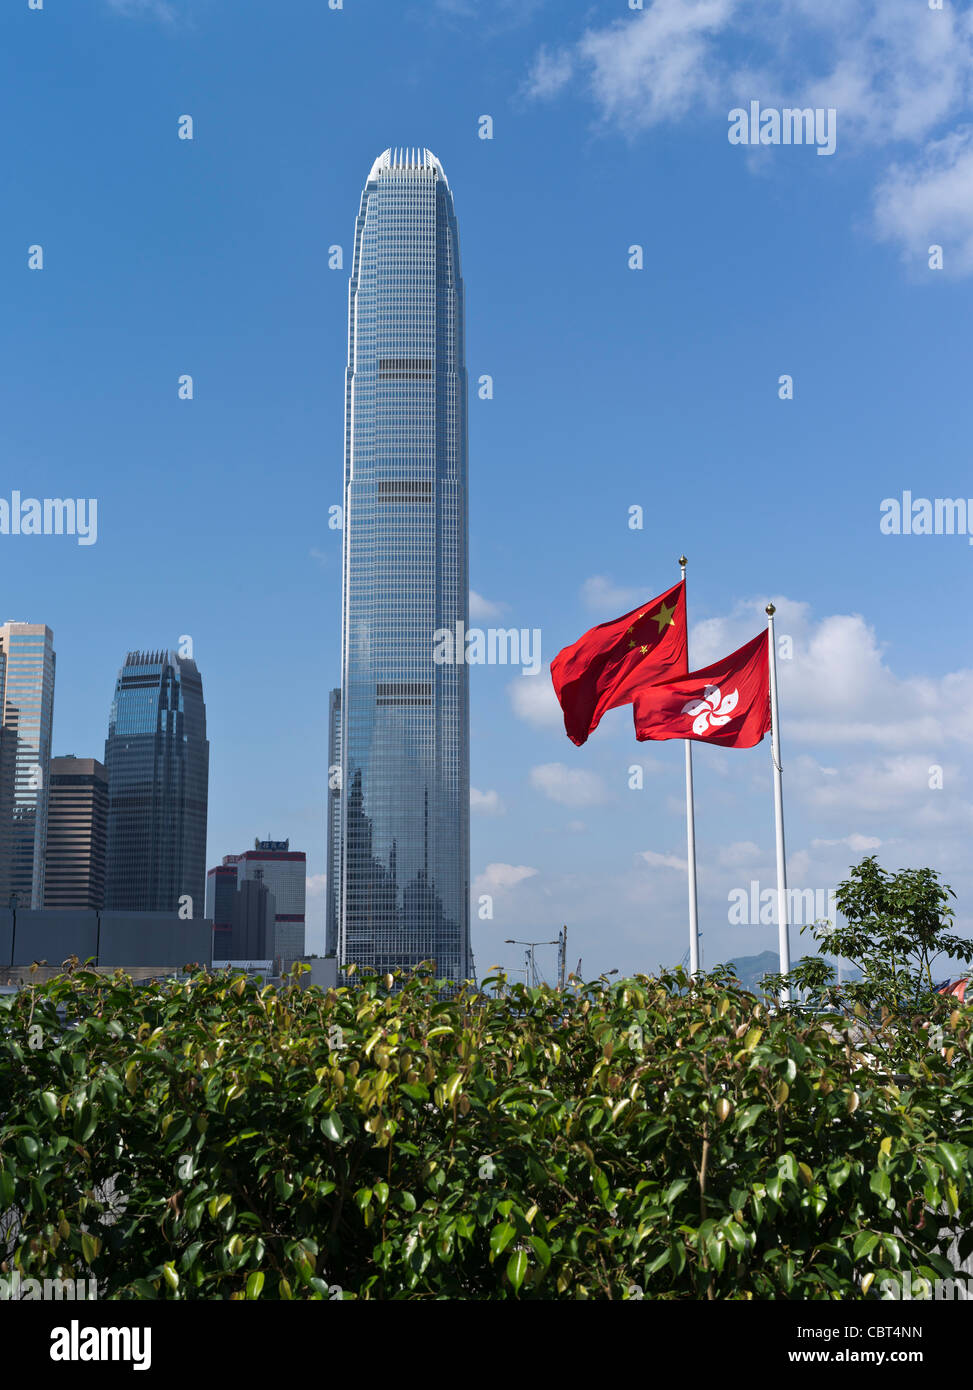 dh Centre financier international CENTRAL HONG KONG drapeau chinois et drapeaux de Hong Kong moderne IFC 2 architecture bâtiments de la tour de chine Banque D'Images